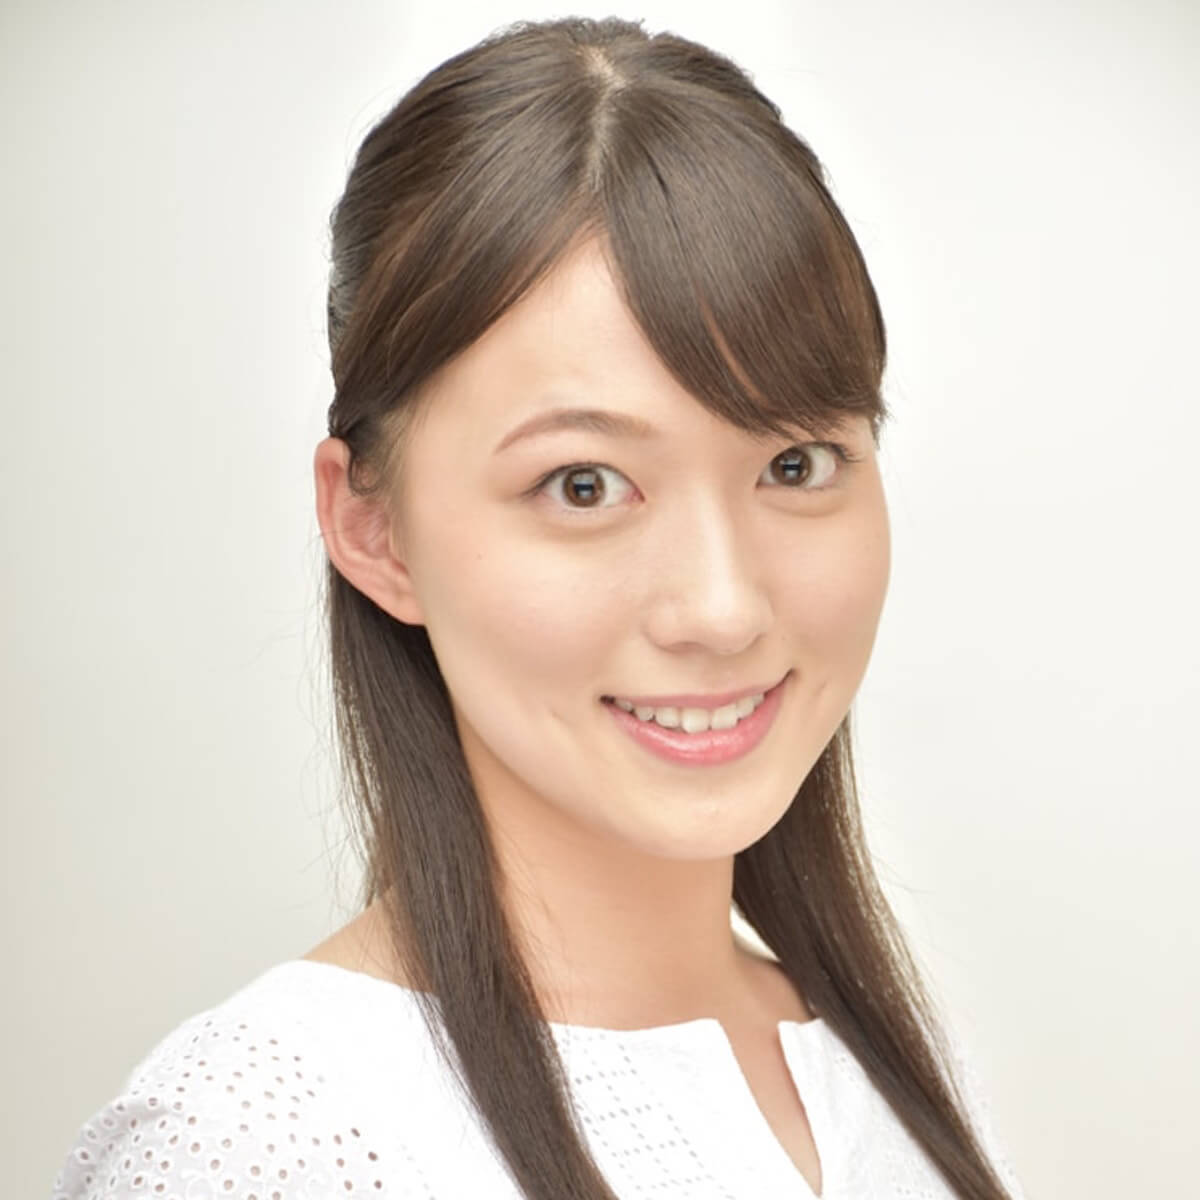 お天気お姉さんの人気ナンバー1に めざましテレビ 阿部華也子は 第二の岡副麻希 になれるか 日刊サイゾー